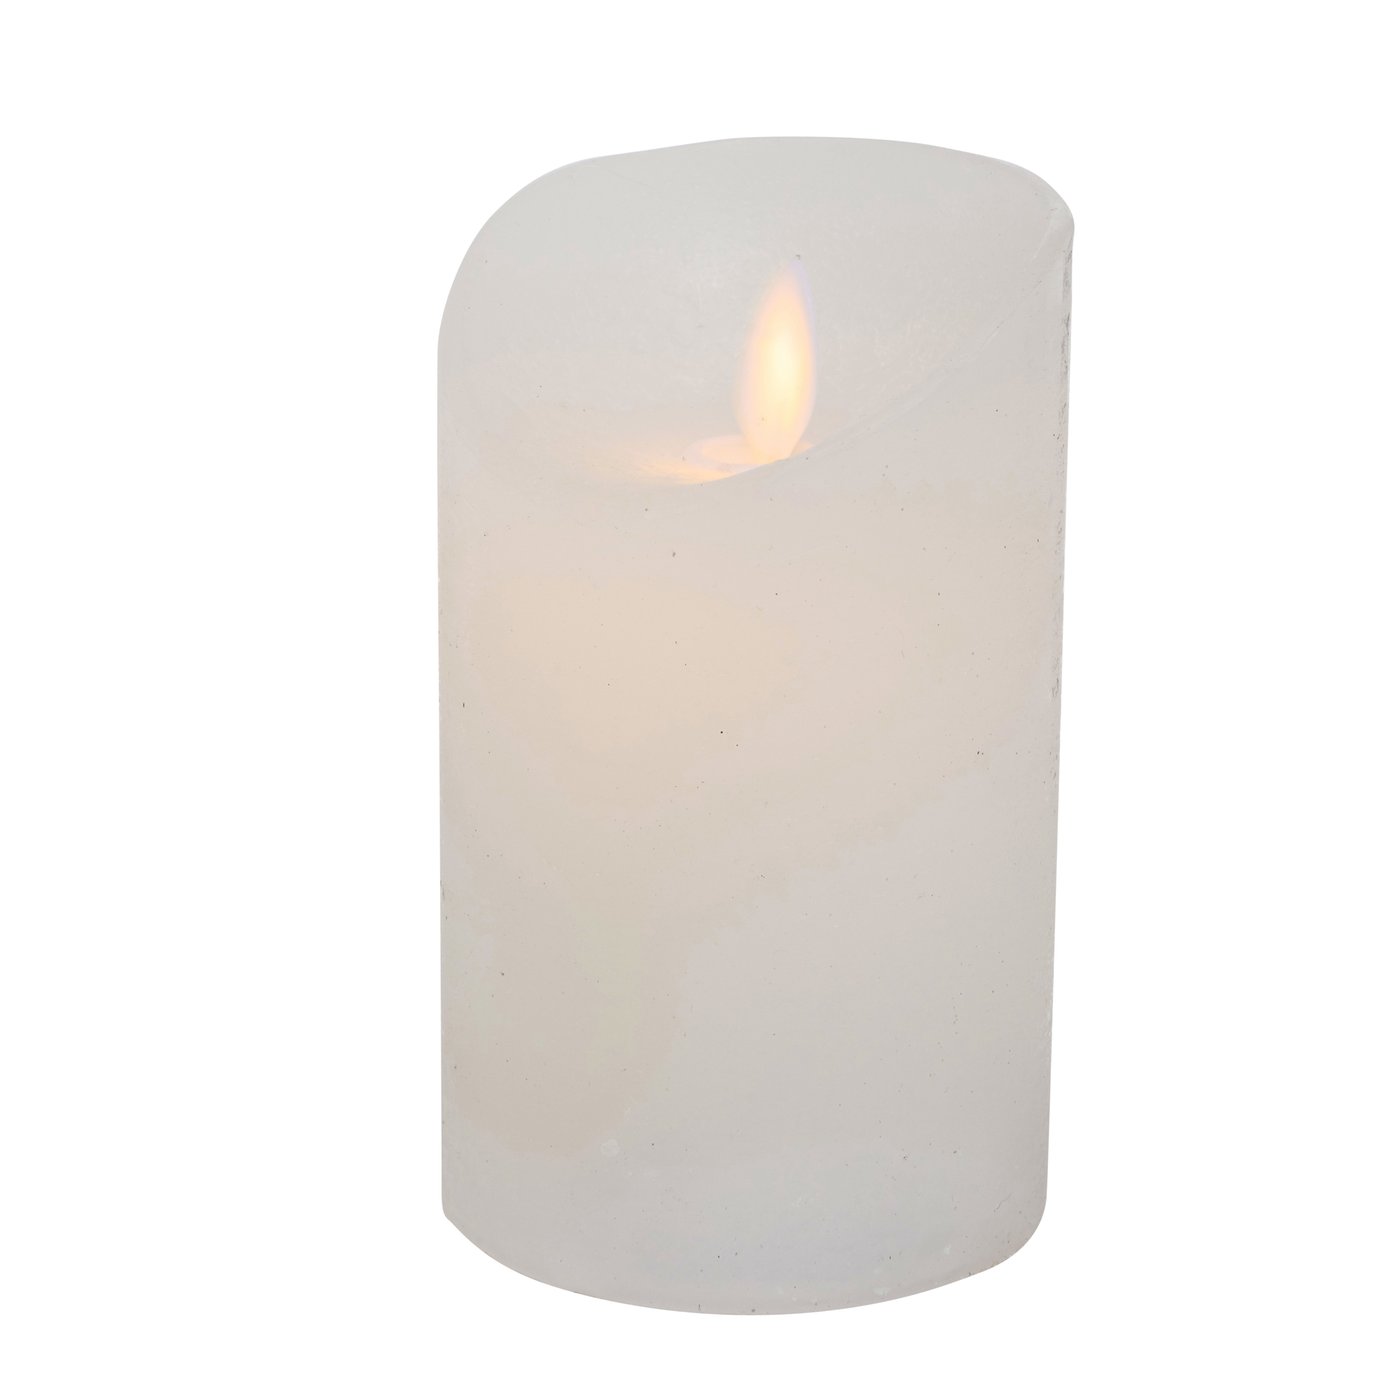 LED Echt Wachs Kerze weiß mit Timer Höhe 12,5cm, Durchmesser 7,5cm, 2004099, 4020607780187